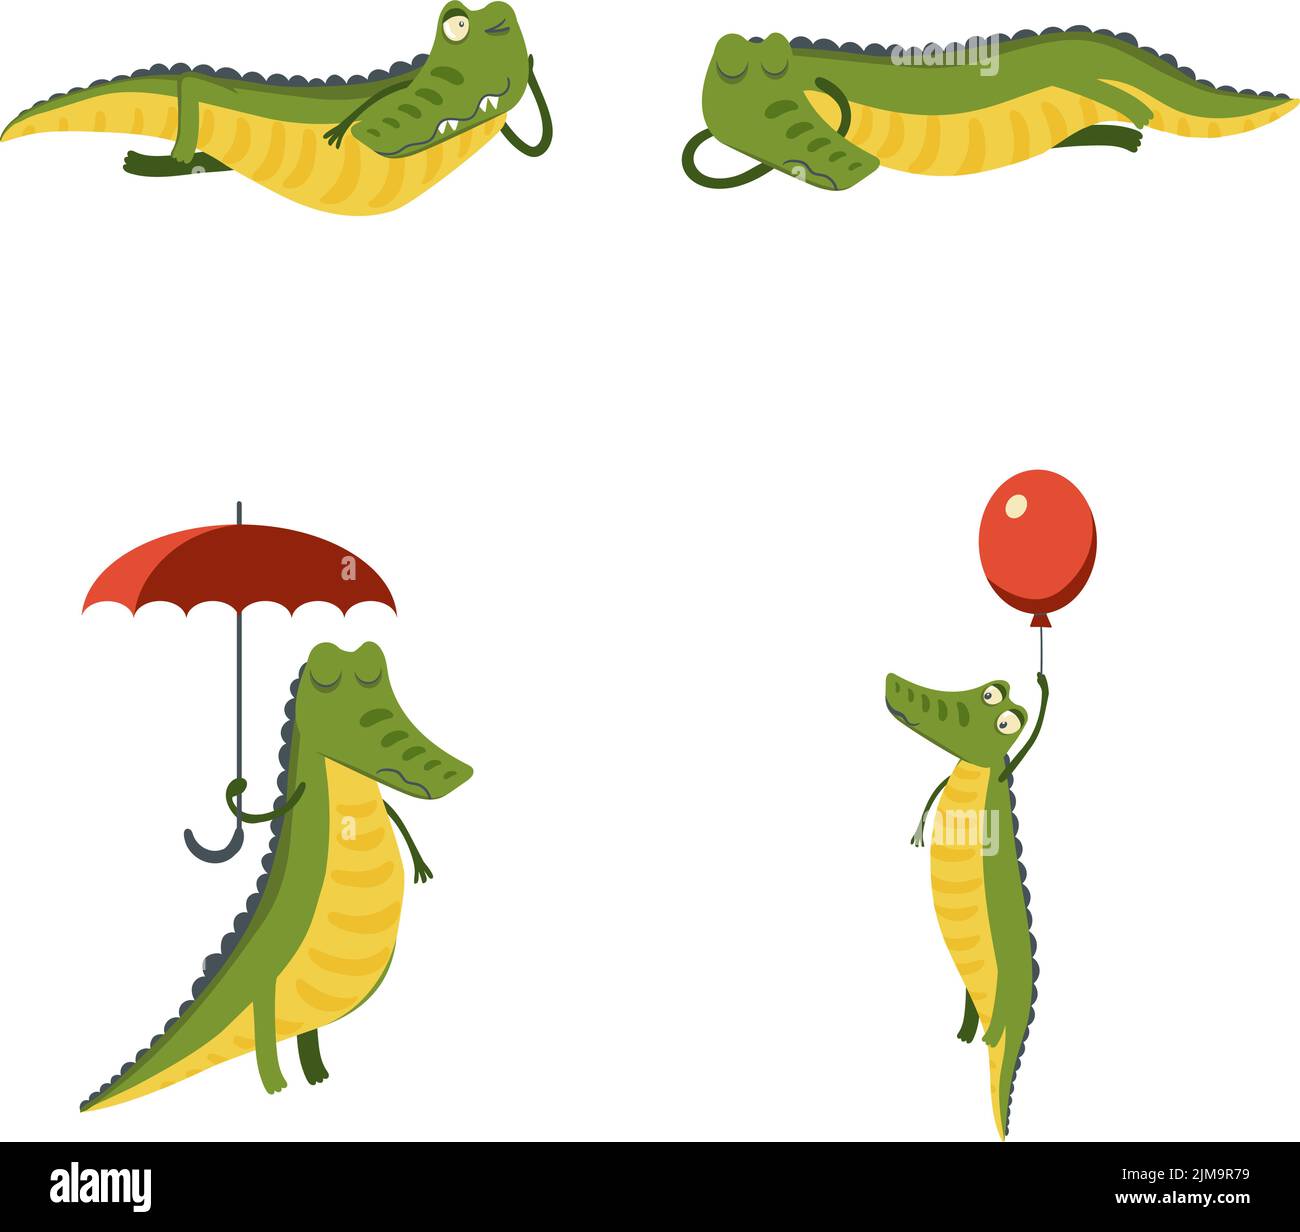 Crocodile sleeping Stock Vector Images - Alamy